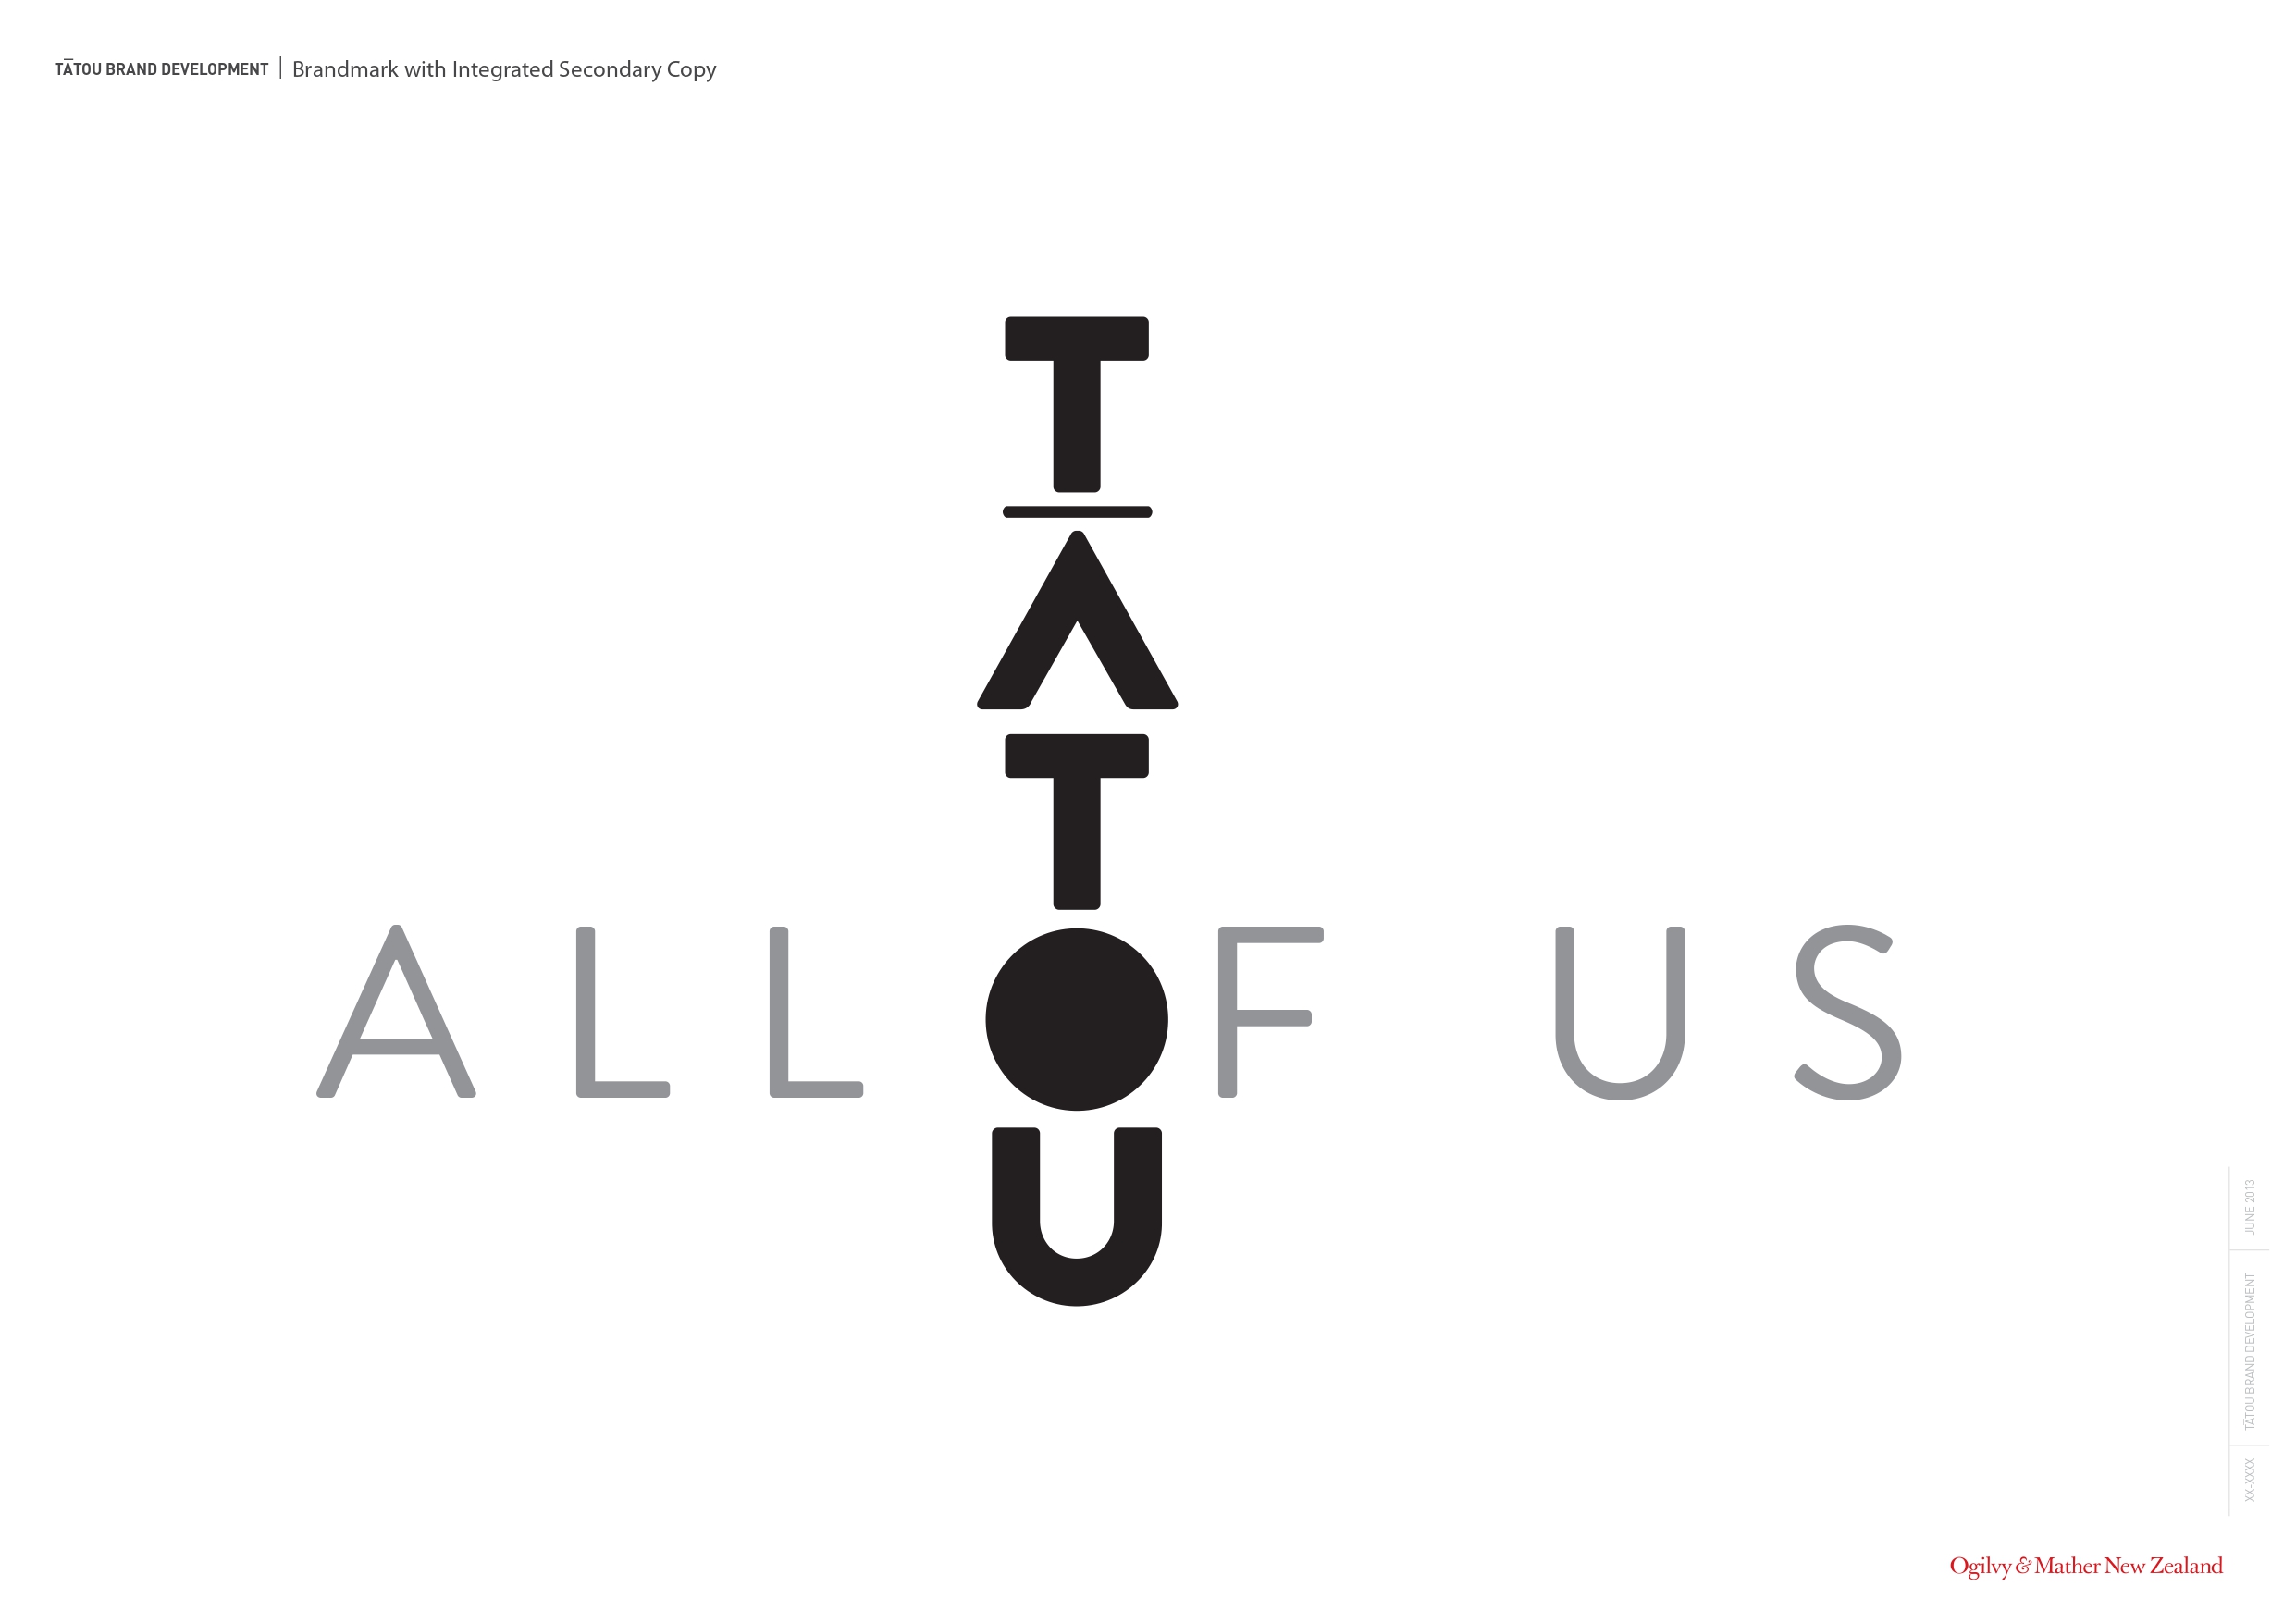 Tatou project image